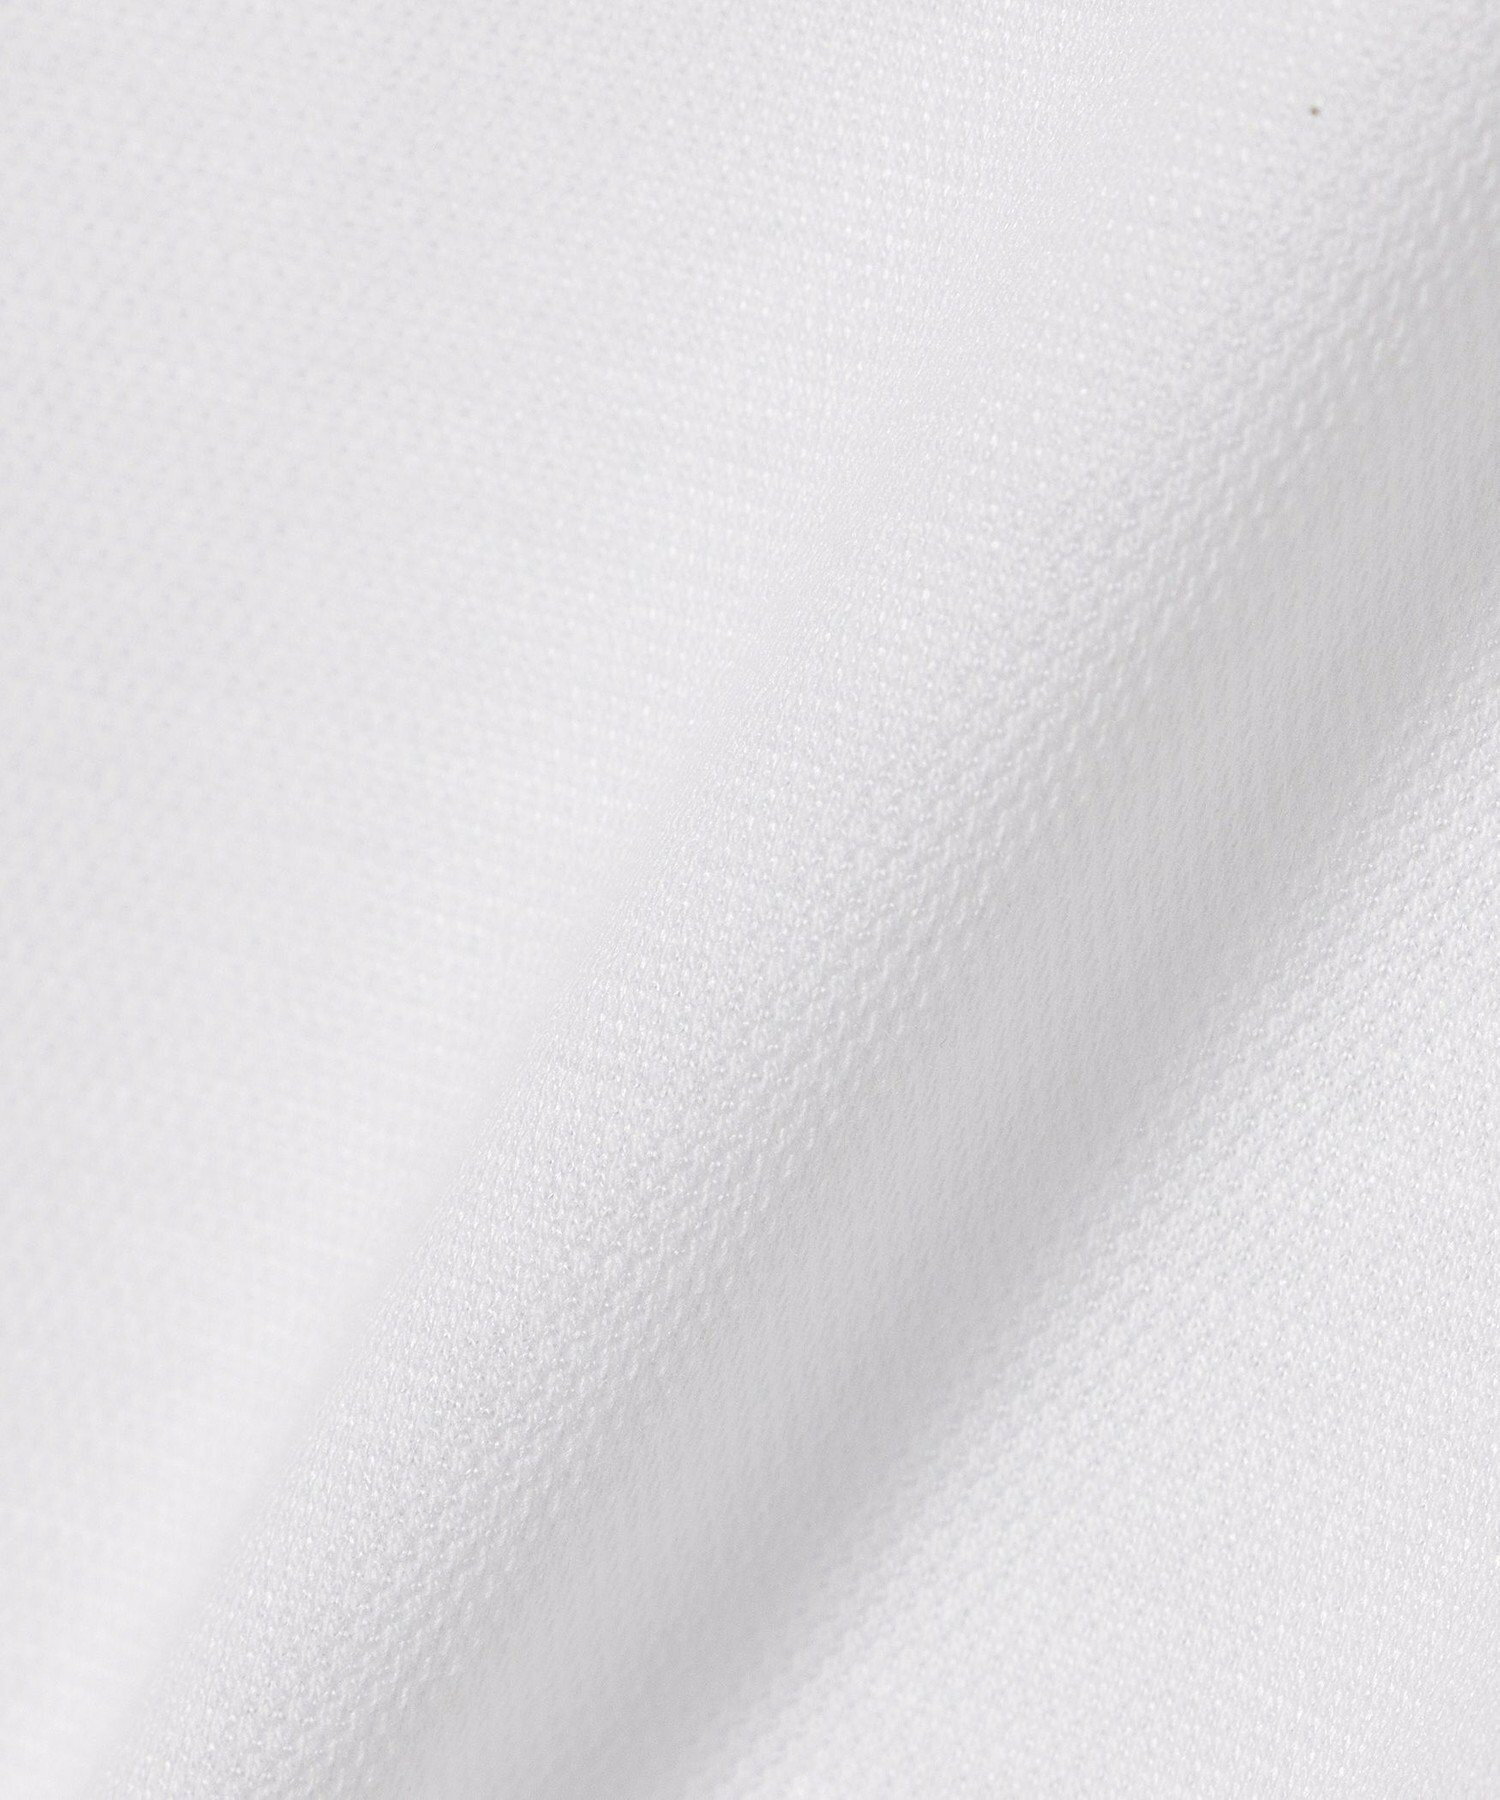 【吸水速乾・抗菌防臭】BEAMS HEART / ハニカム カッタウェイカラー フルオープン ポロシャツ 24SS